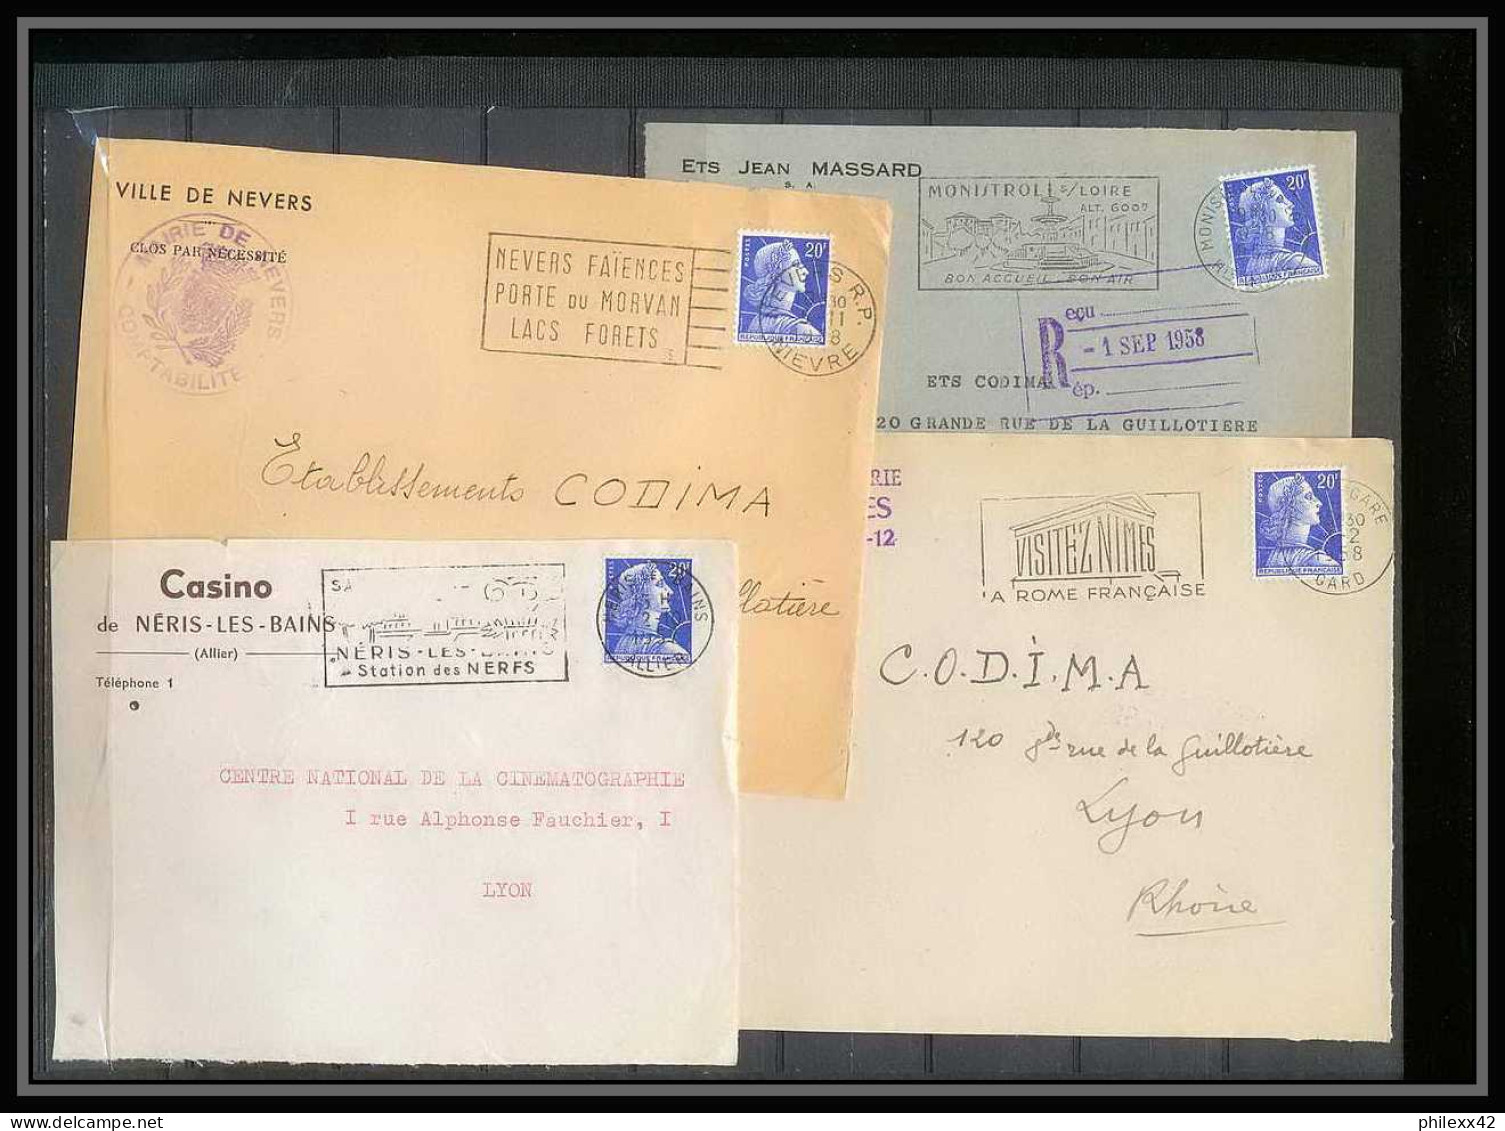 13066 Lot de 84 lettres N°1011 Marianne de Muller (lettre enveloppe courrier) Voir photos